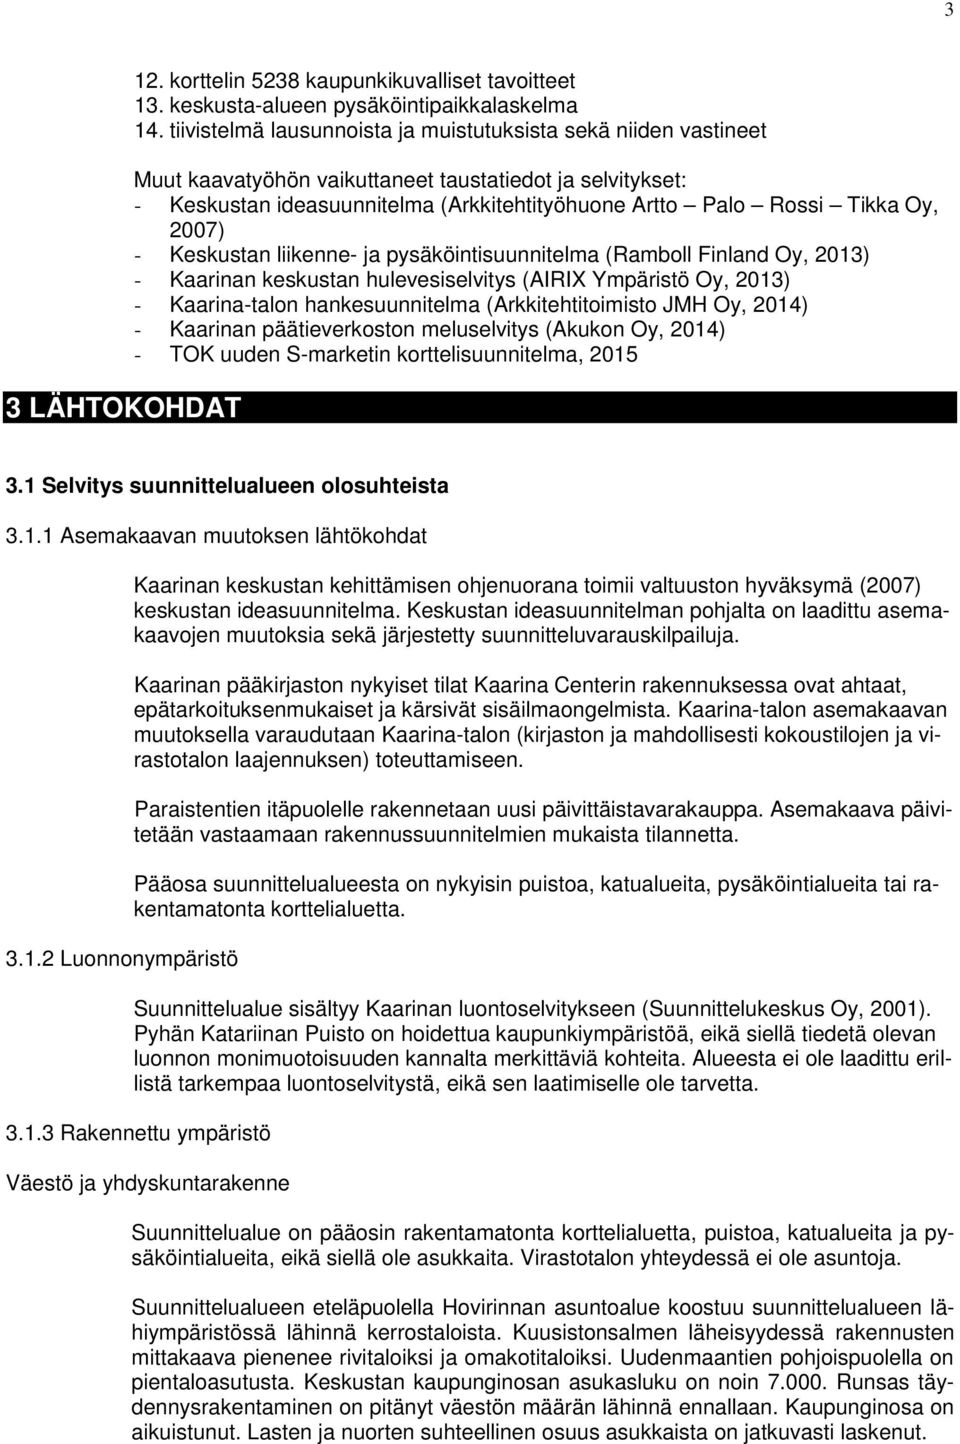 2007) - Keskustan liikenne- ja pysäköintisuunnitelma (Ramboll Finland Oy, 2013) - Kaarinan keskustan hulevesiselvitys (AIRIX Ympäristö Oy, 2013) - Kaarina-talon hankesuunnitelma (Arkkitehtitoimisto